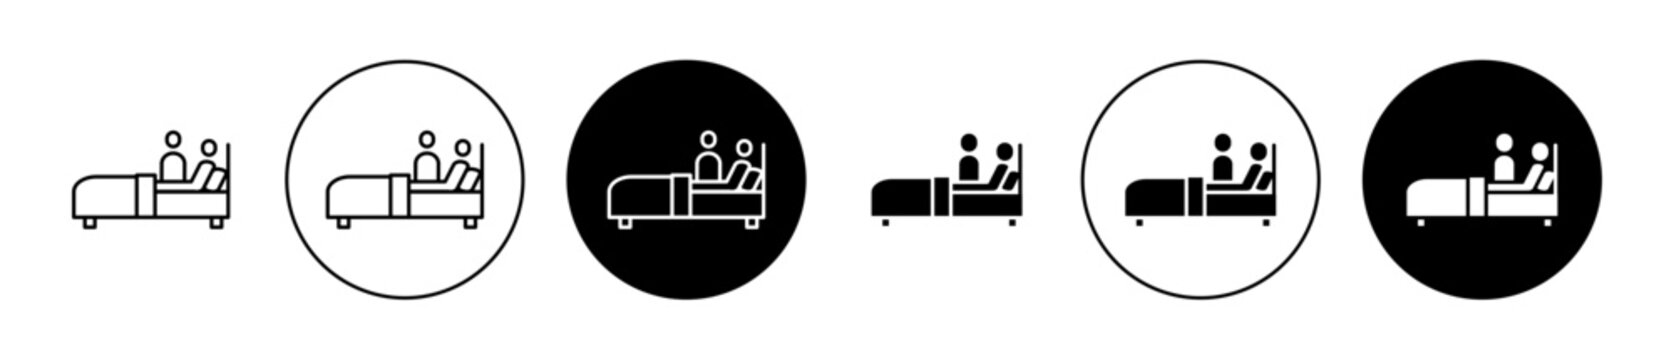 Caregiver nursing home Line Icon Set. Elderly bed vector symbol for UI designs.